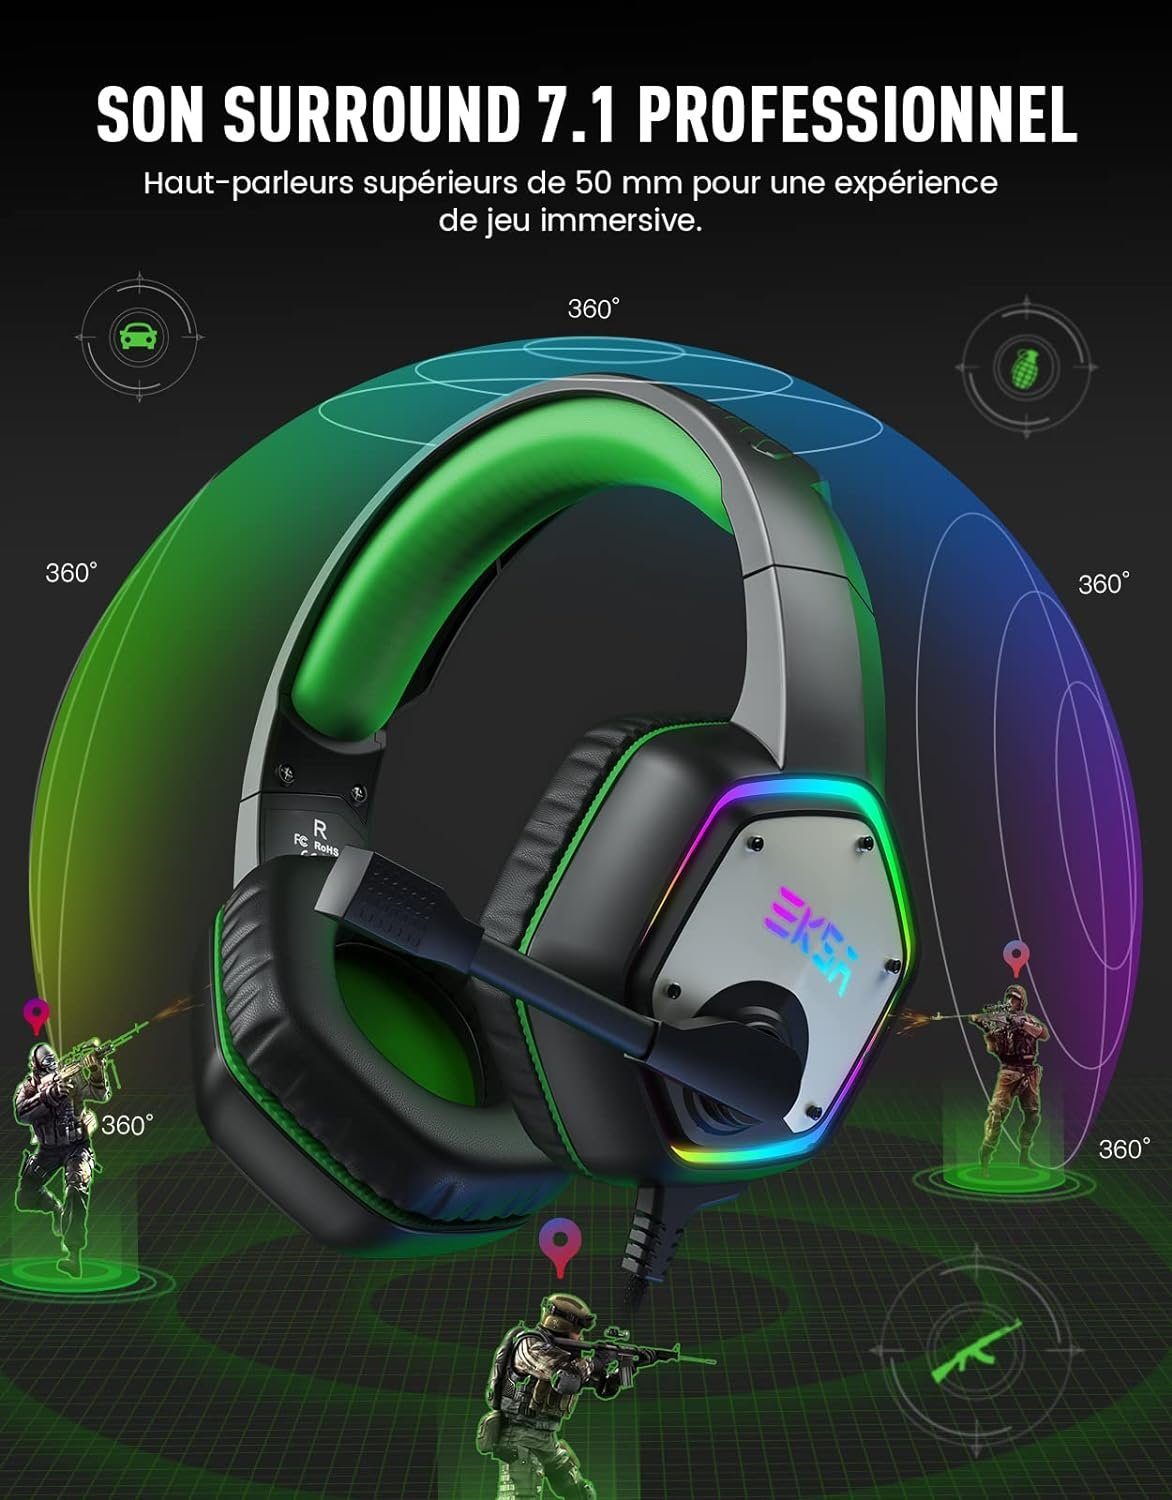 EKSA 50-mm-Audiolautsprecher, dank Headset Bass mit Sound Gaming Gamer Mikrofon, PC (Intensiver Headset Gaming-Headset Surround Sound) Surround mit